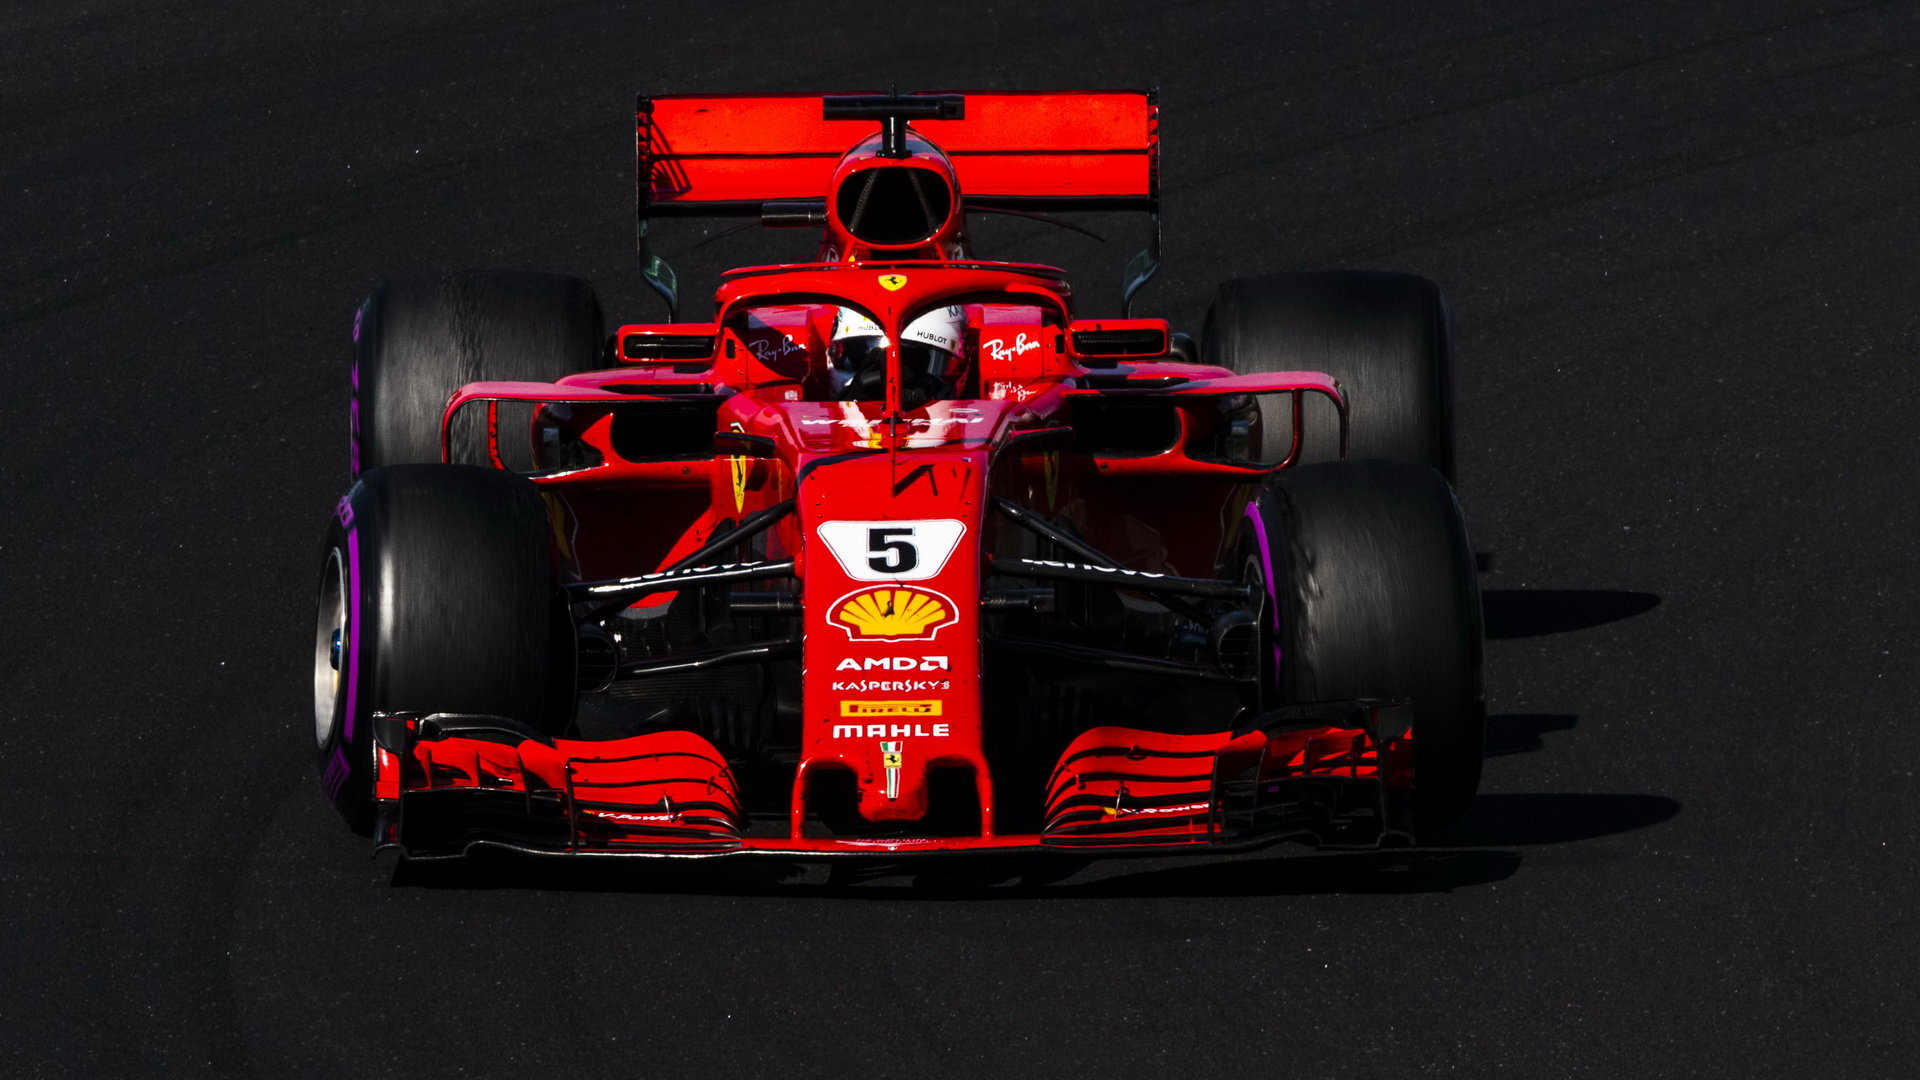 Sebastian Vettel dojel v Maďarsku po kolizi s Valtterim Bottasem druhý za svým největším soupeřem, Lewisem Hamiltonem